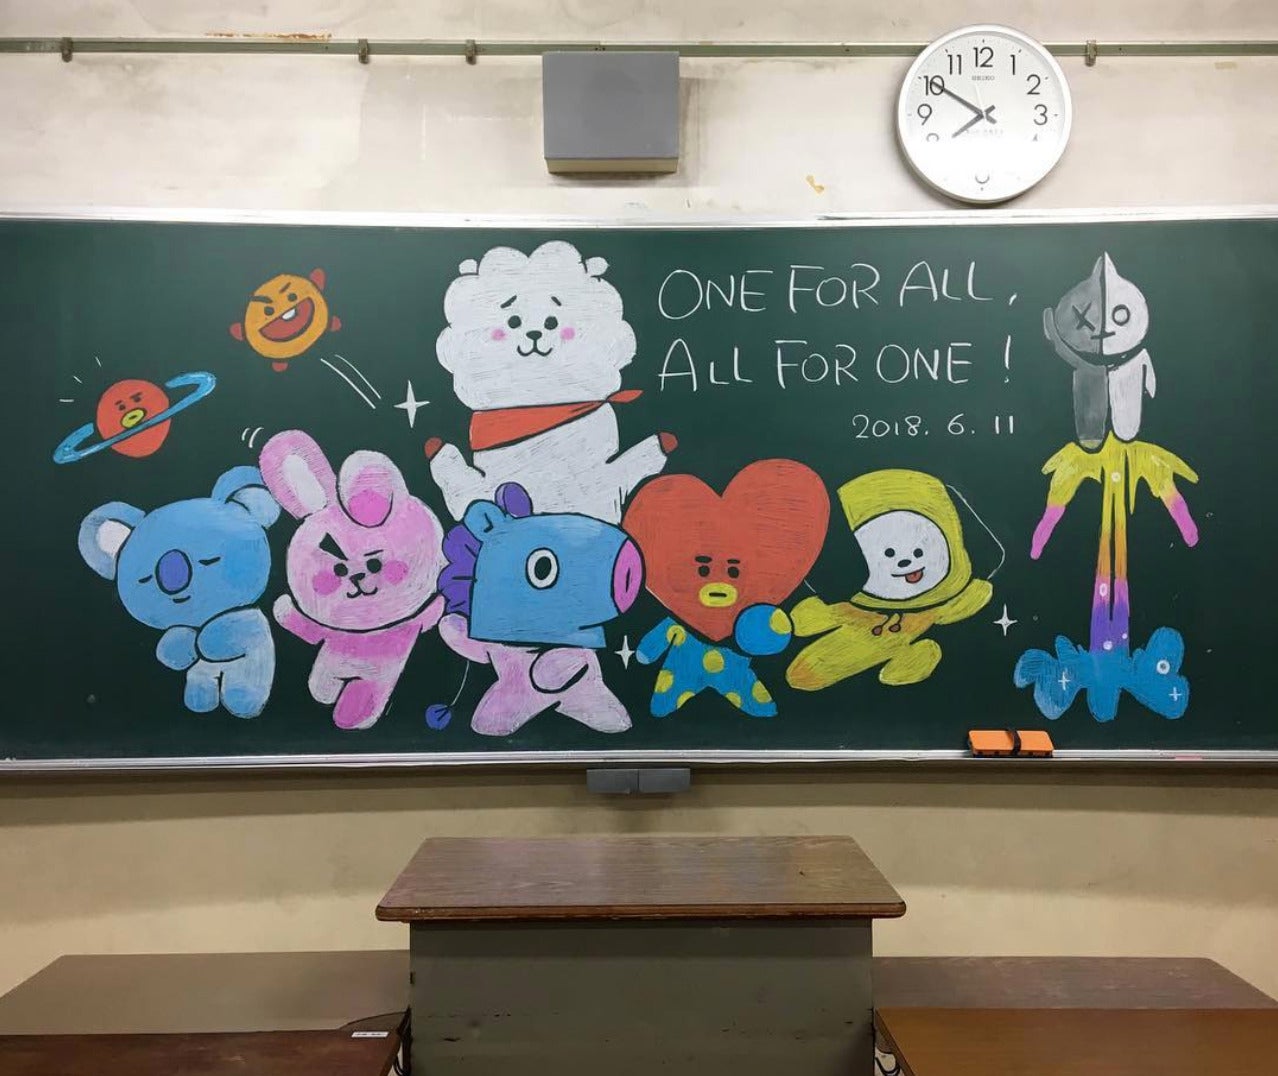 ภาพวาดสีชอล์กบนกระดานดำ จากครูชาวญี่ปุ่น